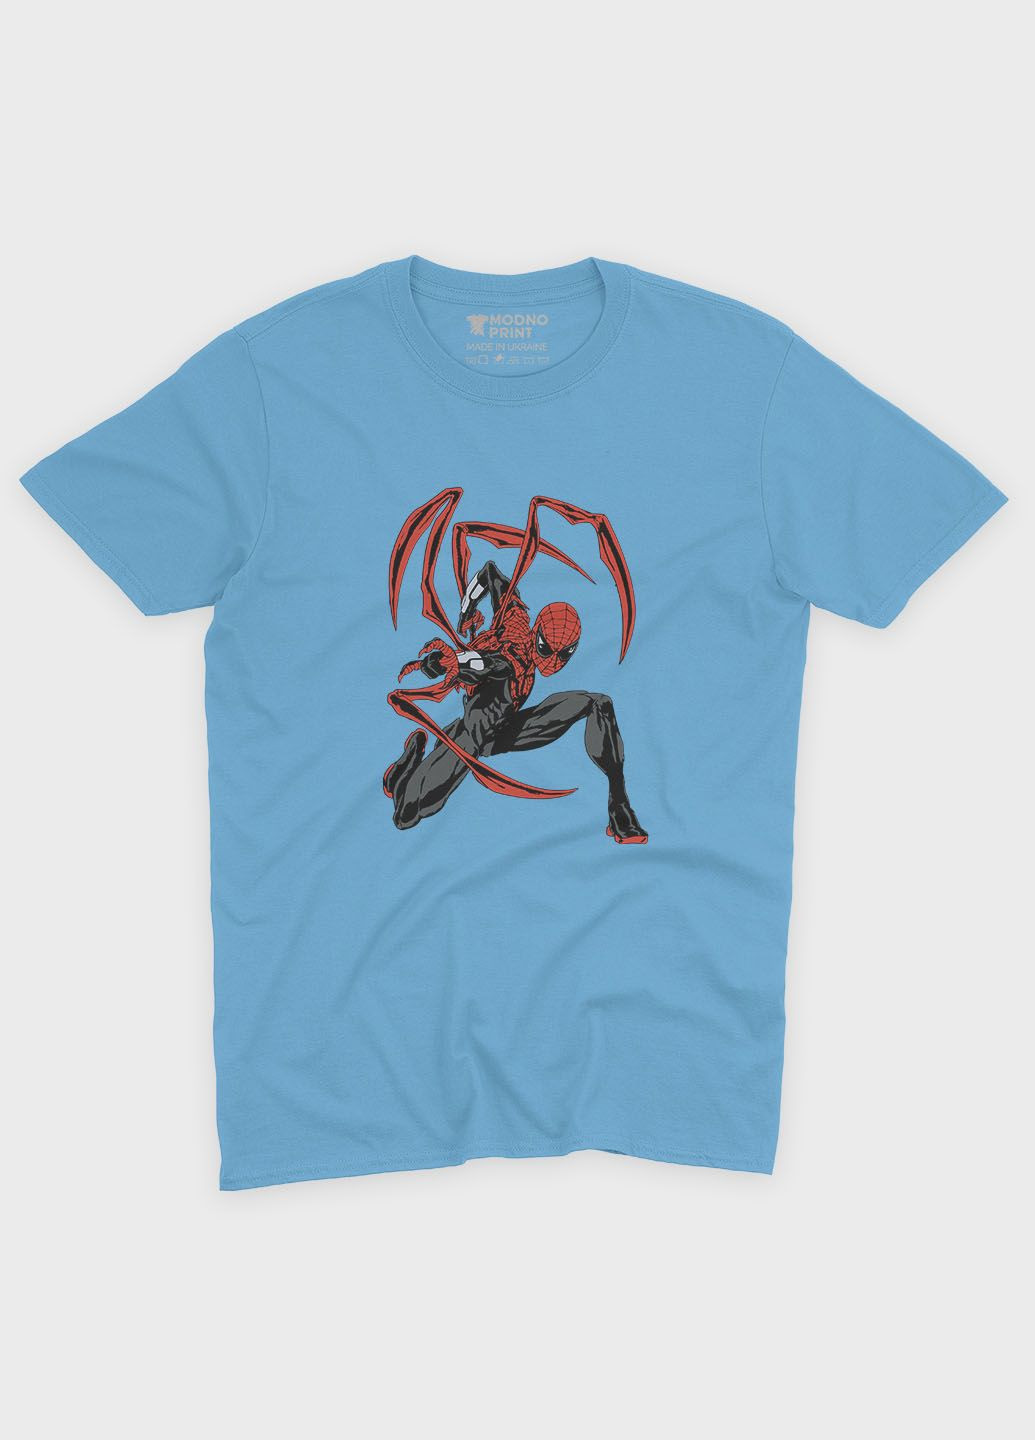 Голубая демисезонная футболка для девочки с принтом супергероя - человек-паук (ts001-1-lbl-006-014-115-g) Modno